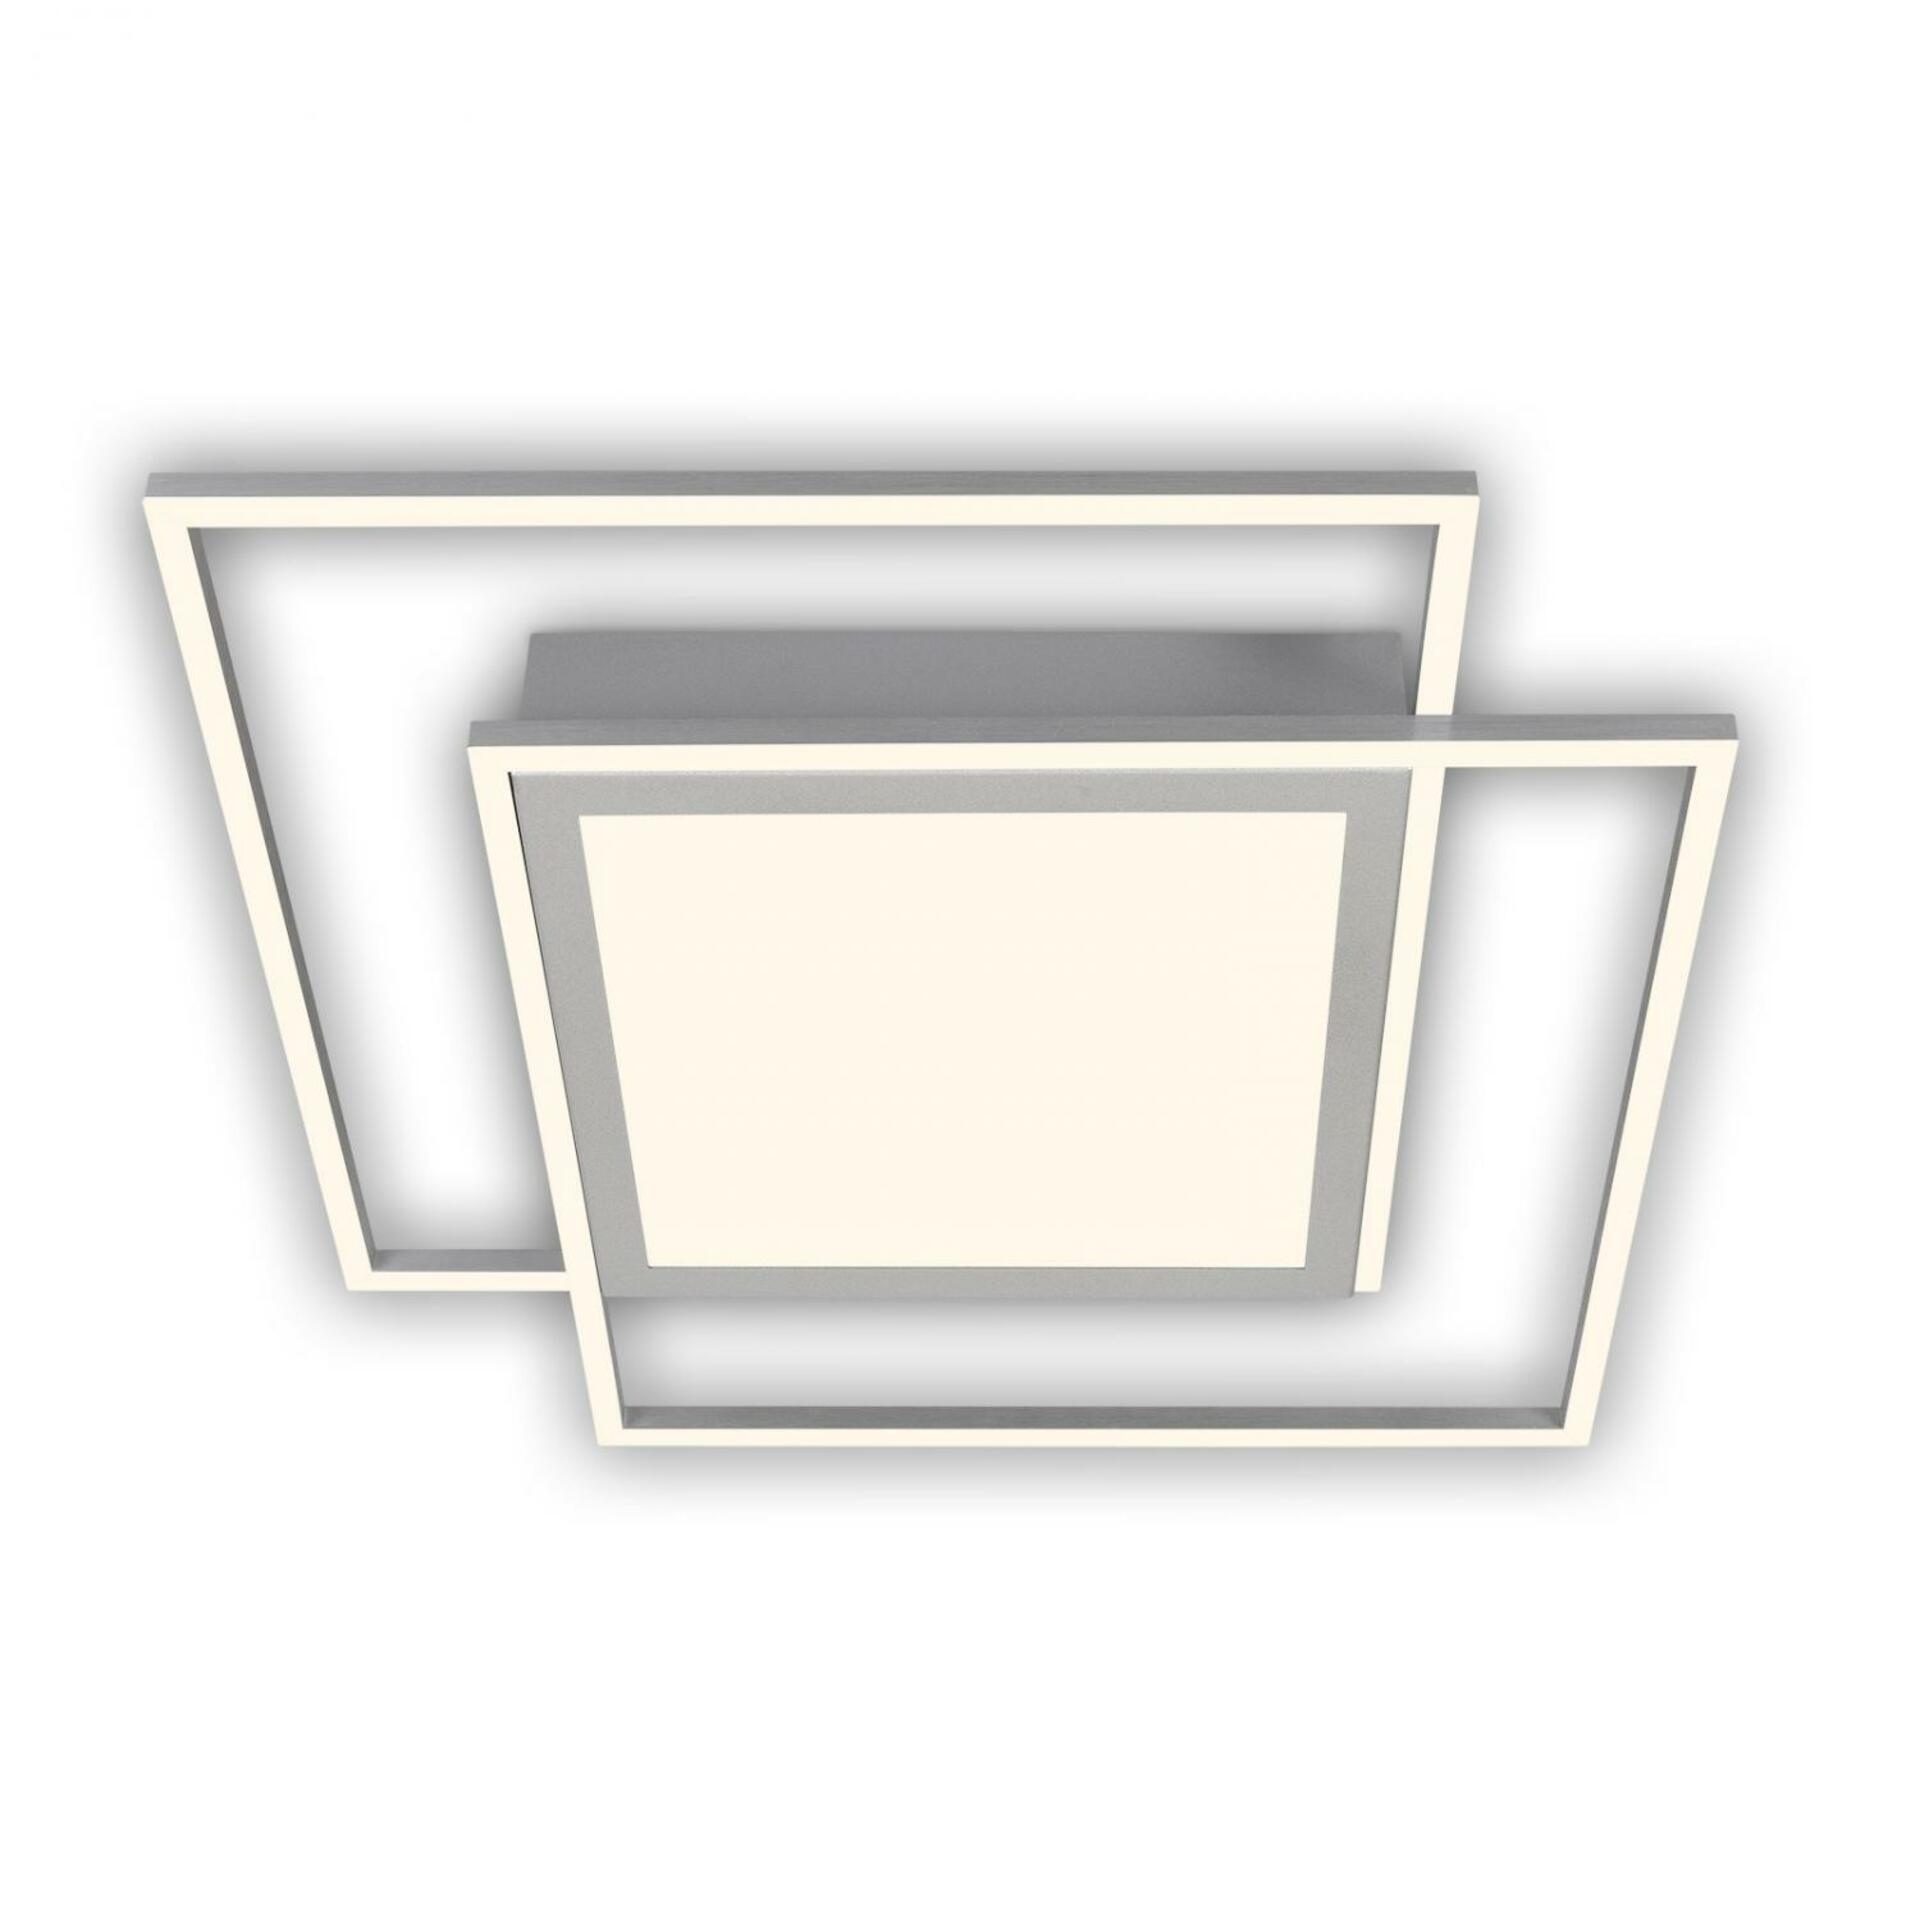 BRILONER LED stropní svítidlo, 51,5 cm, 50 W, 5000 lm, hliník-matný chrom BRILO 3740-019